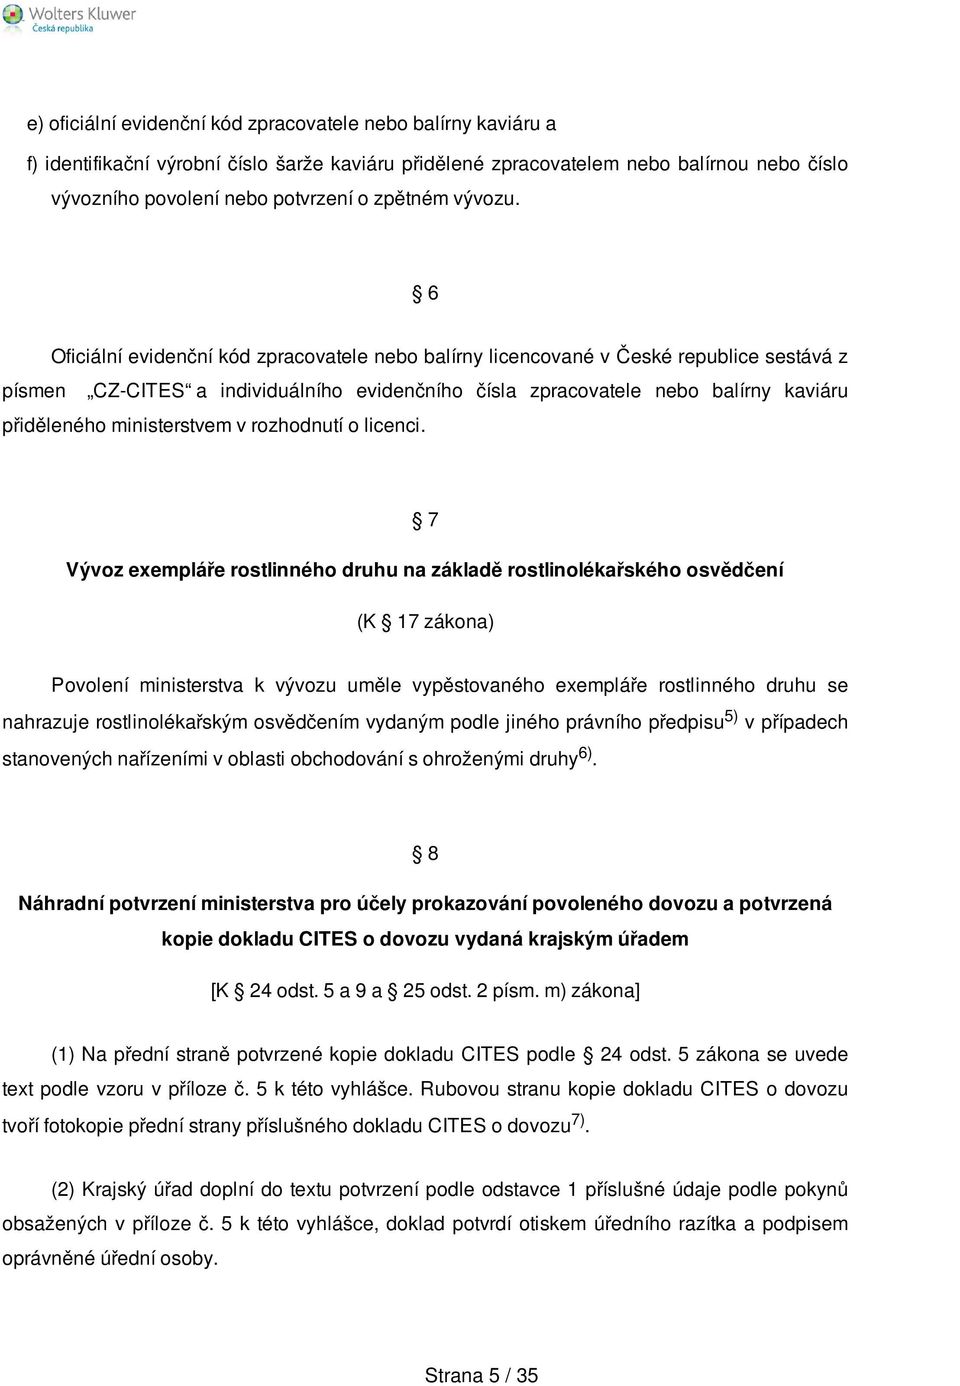 6 Oficiální evidenční kód zpracovatele nebo balírny licencované v České republice sestává z písmen CZ-CITES a individuálního evidenčního čísla zpracovatele nebo balírny kaviáru přiděleného